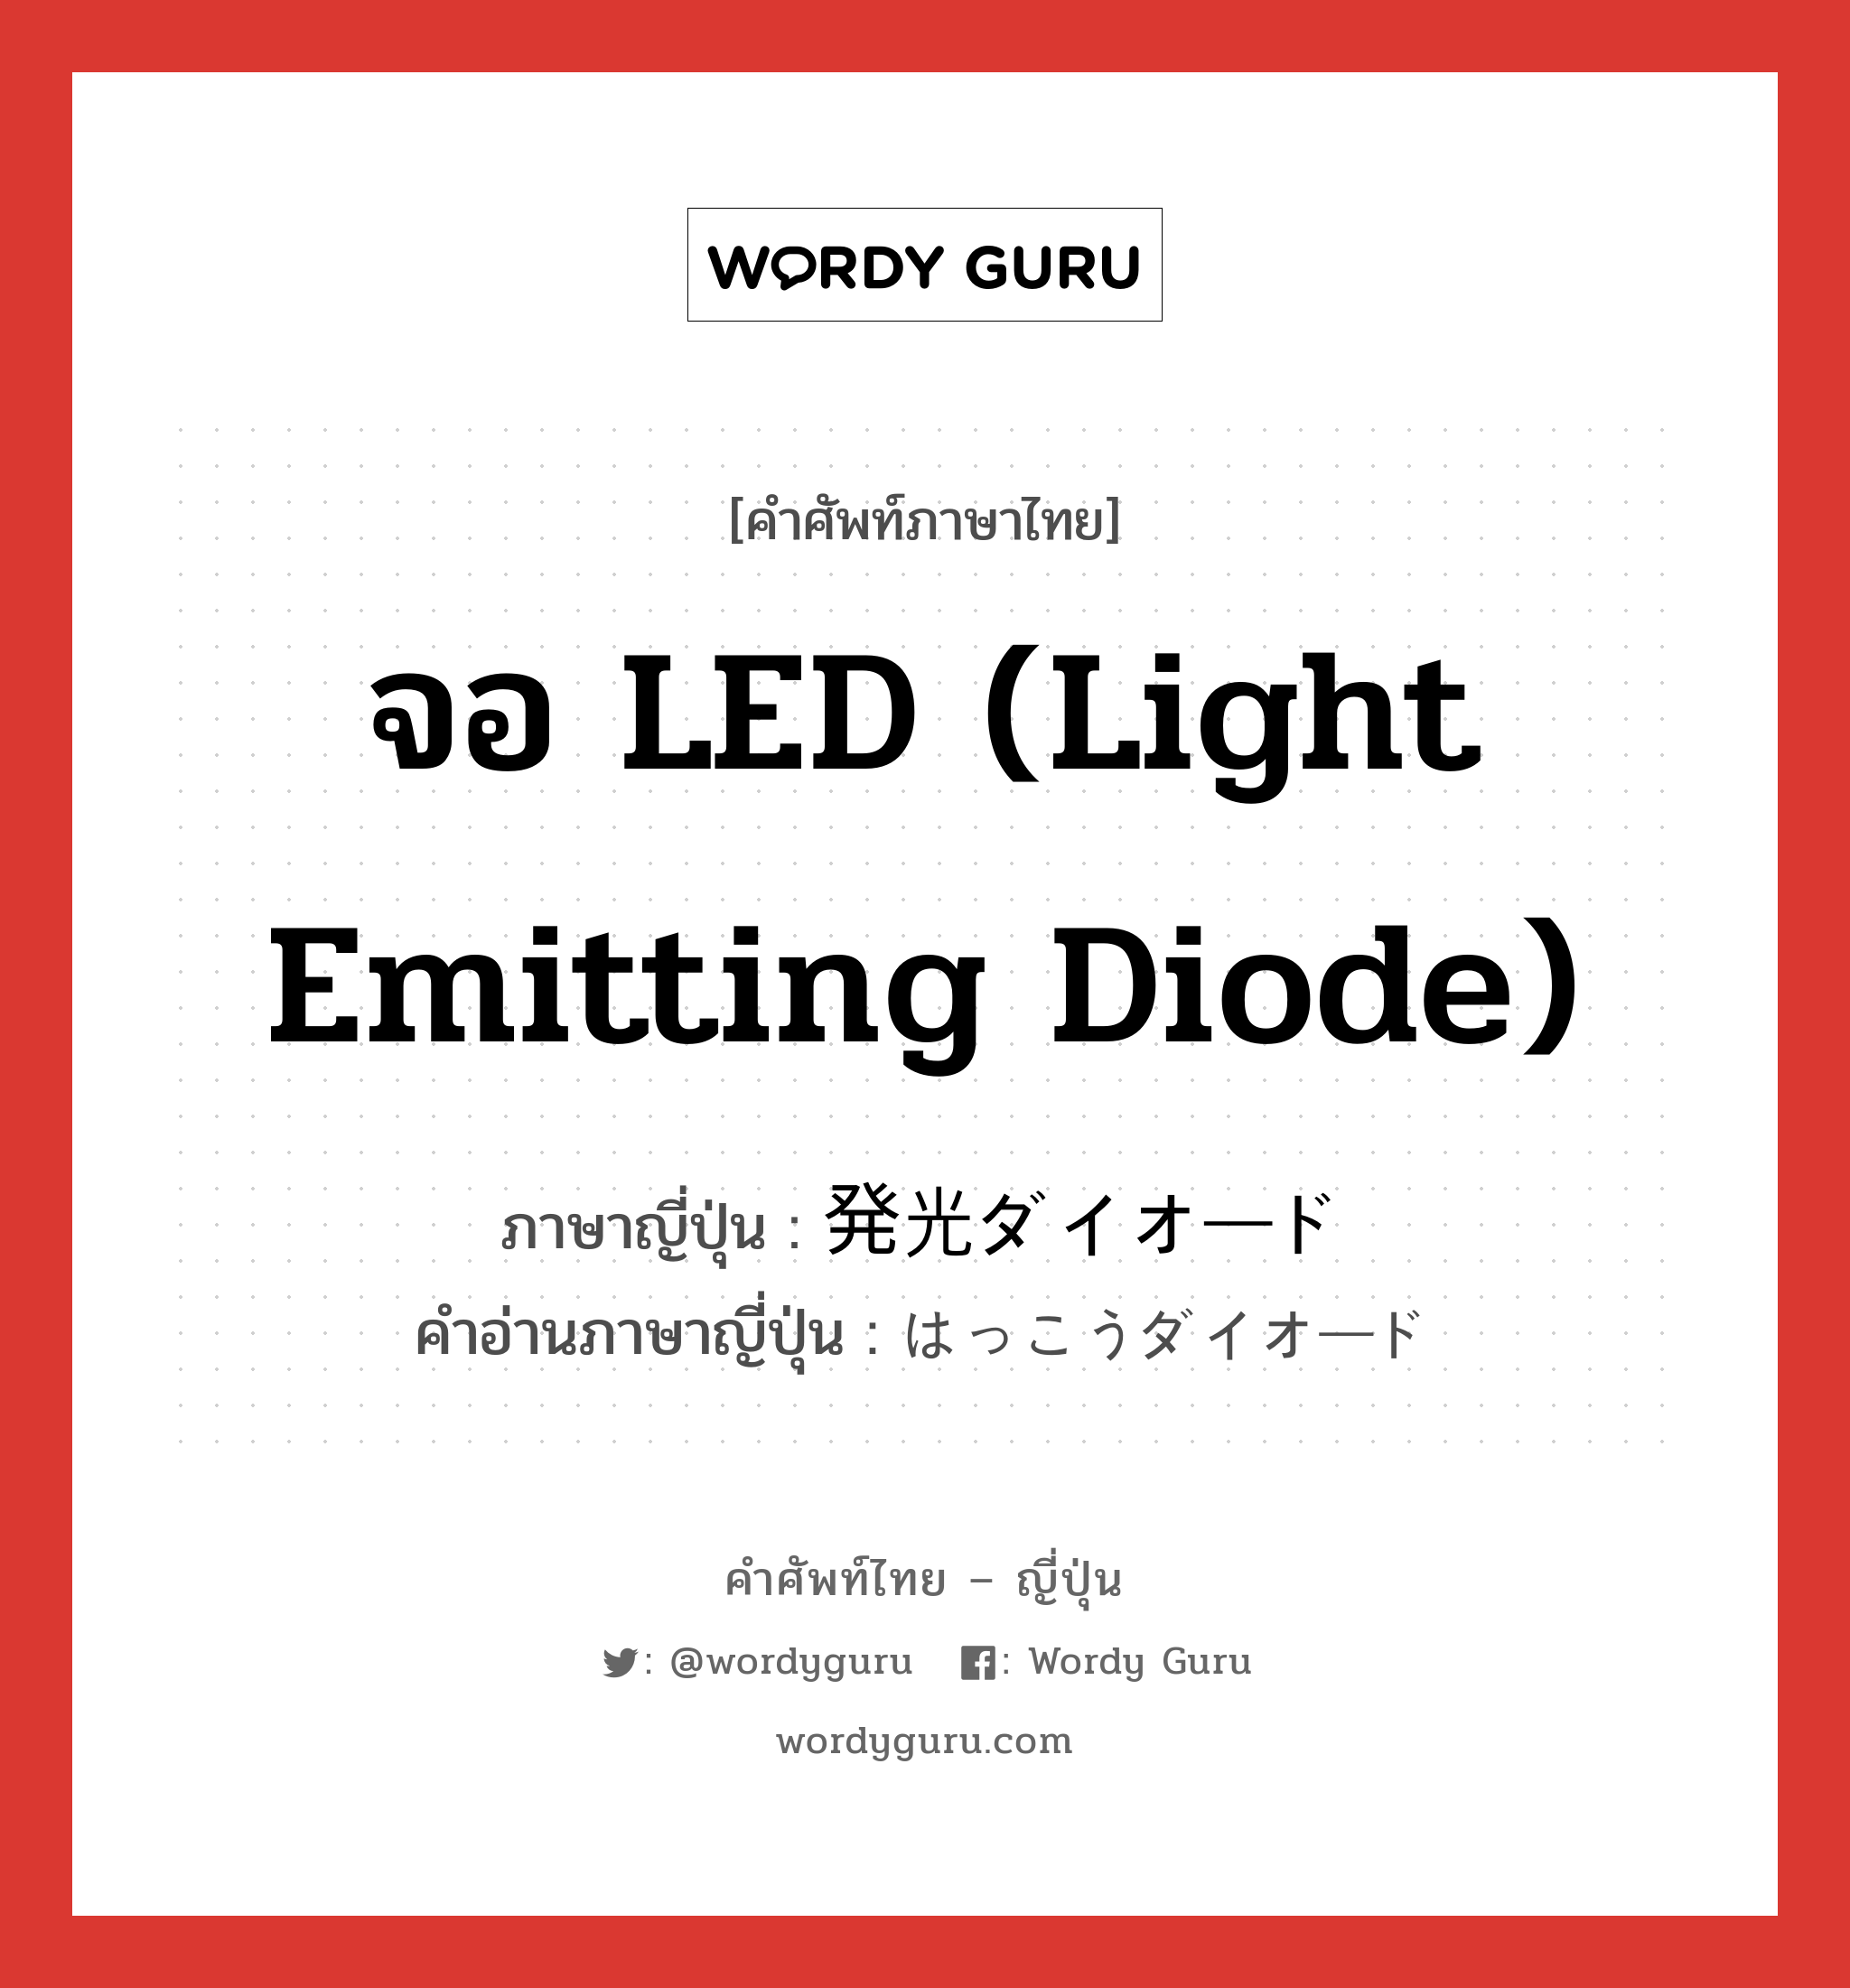 จอ LED (light emitting diode) ภาษาญี่ปุ่นคืออะไร, คำศัพท์ภาษาไทย - ญี่ปุ่น จอ LED (light emitting diode) ภาษาญี่ปุ่น 発光ダイオード คำอ่านภาษาญี่ปุ่น はっこうダイオード หมวด n หมวด n